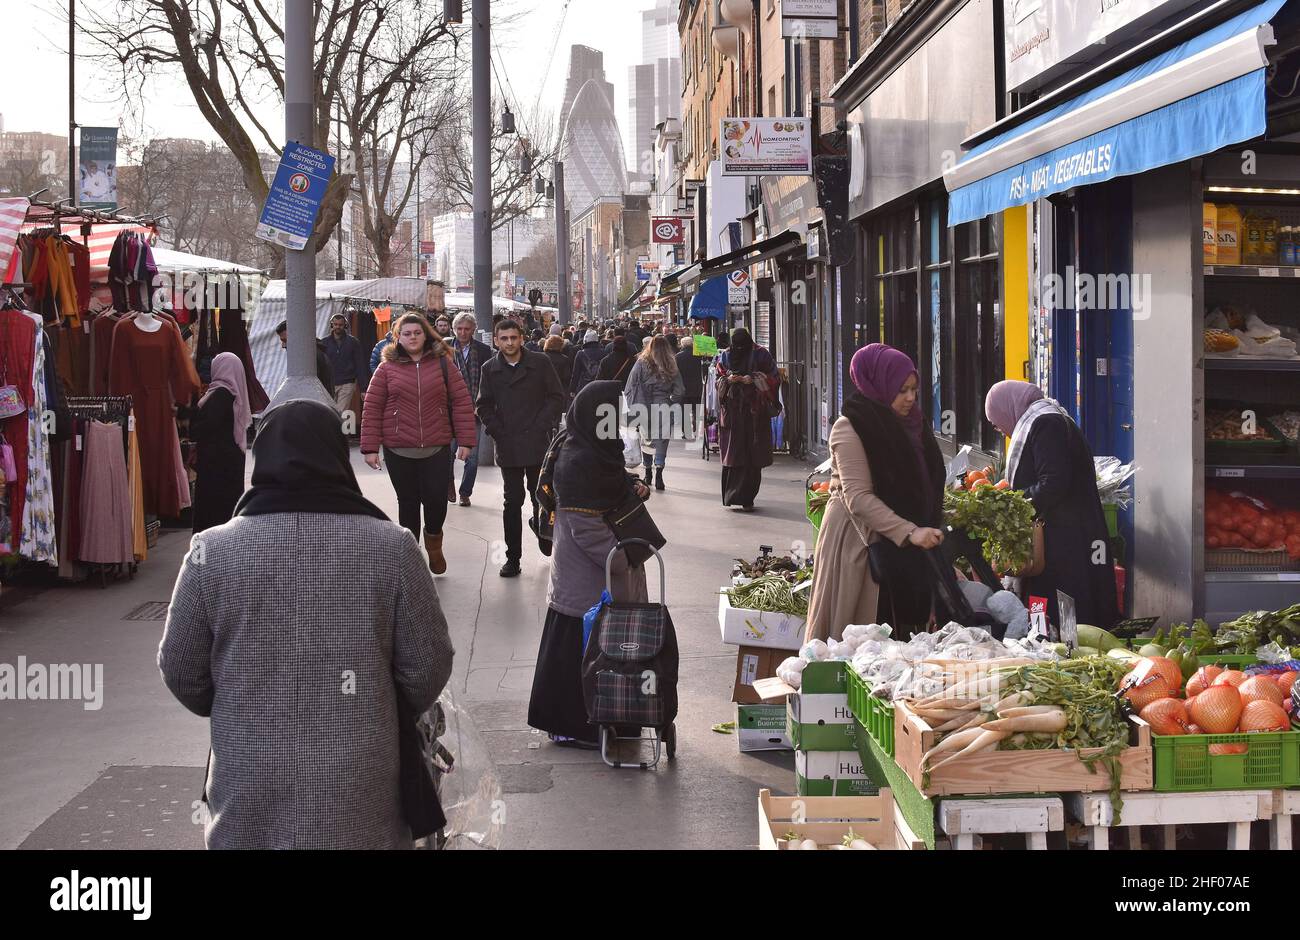 Strada trafficata con gli acquirenti, mercato Whitechapel Road nella zona est di Londra, Regno Unito. Foto Stock